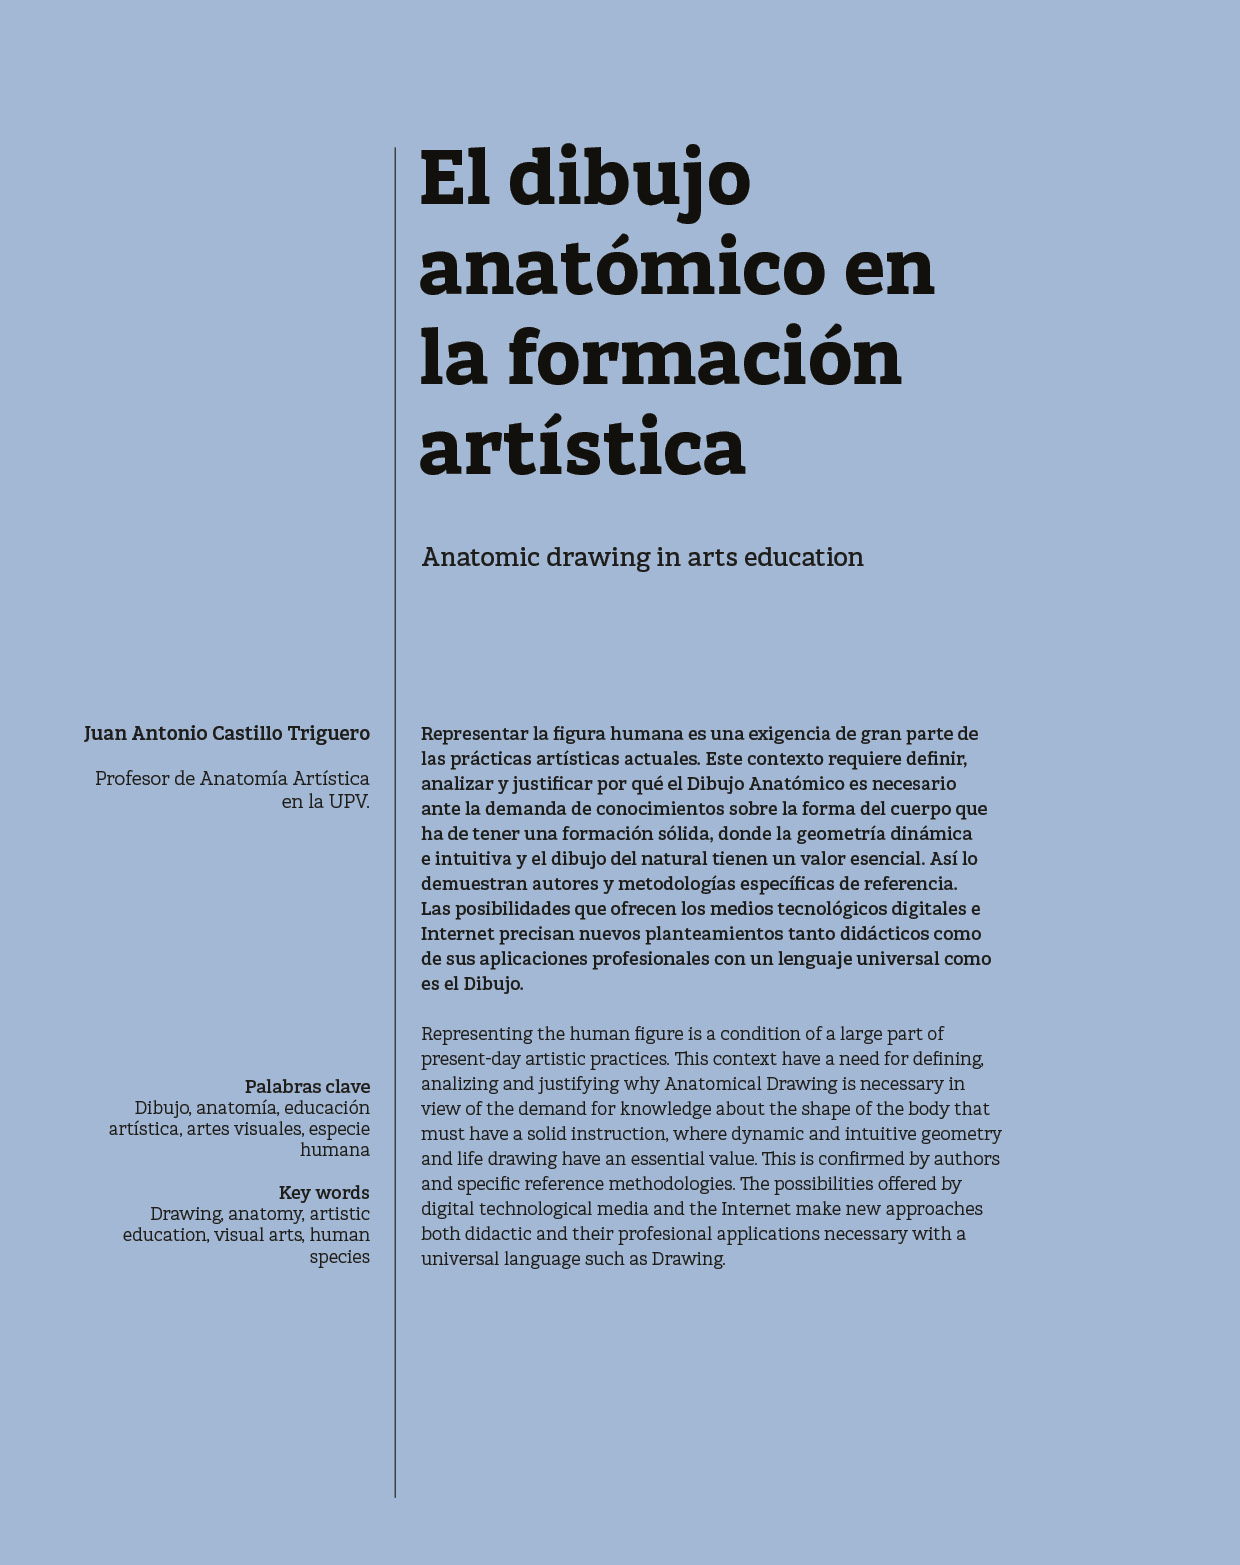 El dibujo anatómico en la formación artística de Juan Antonio Castillo Triguero